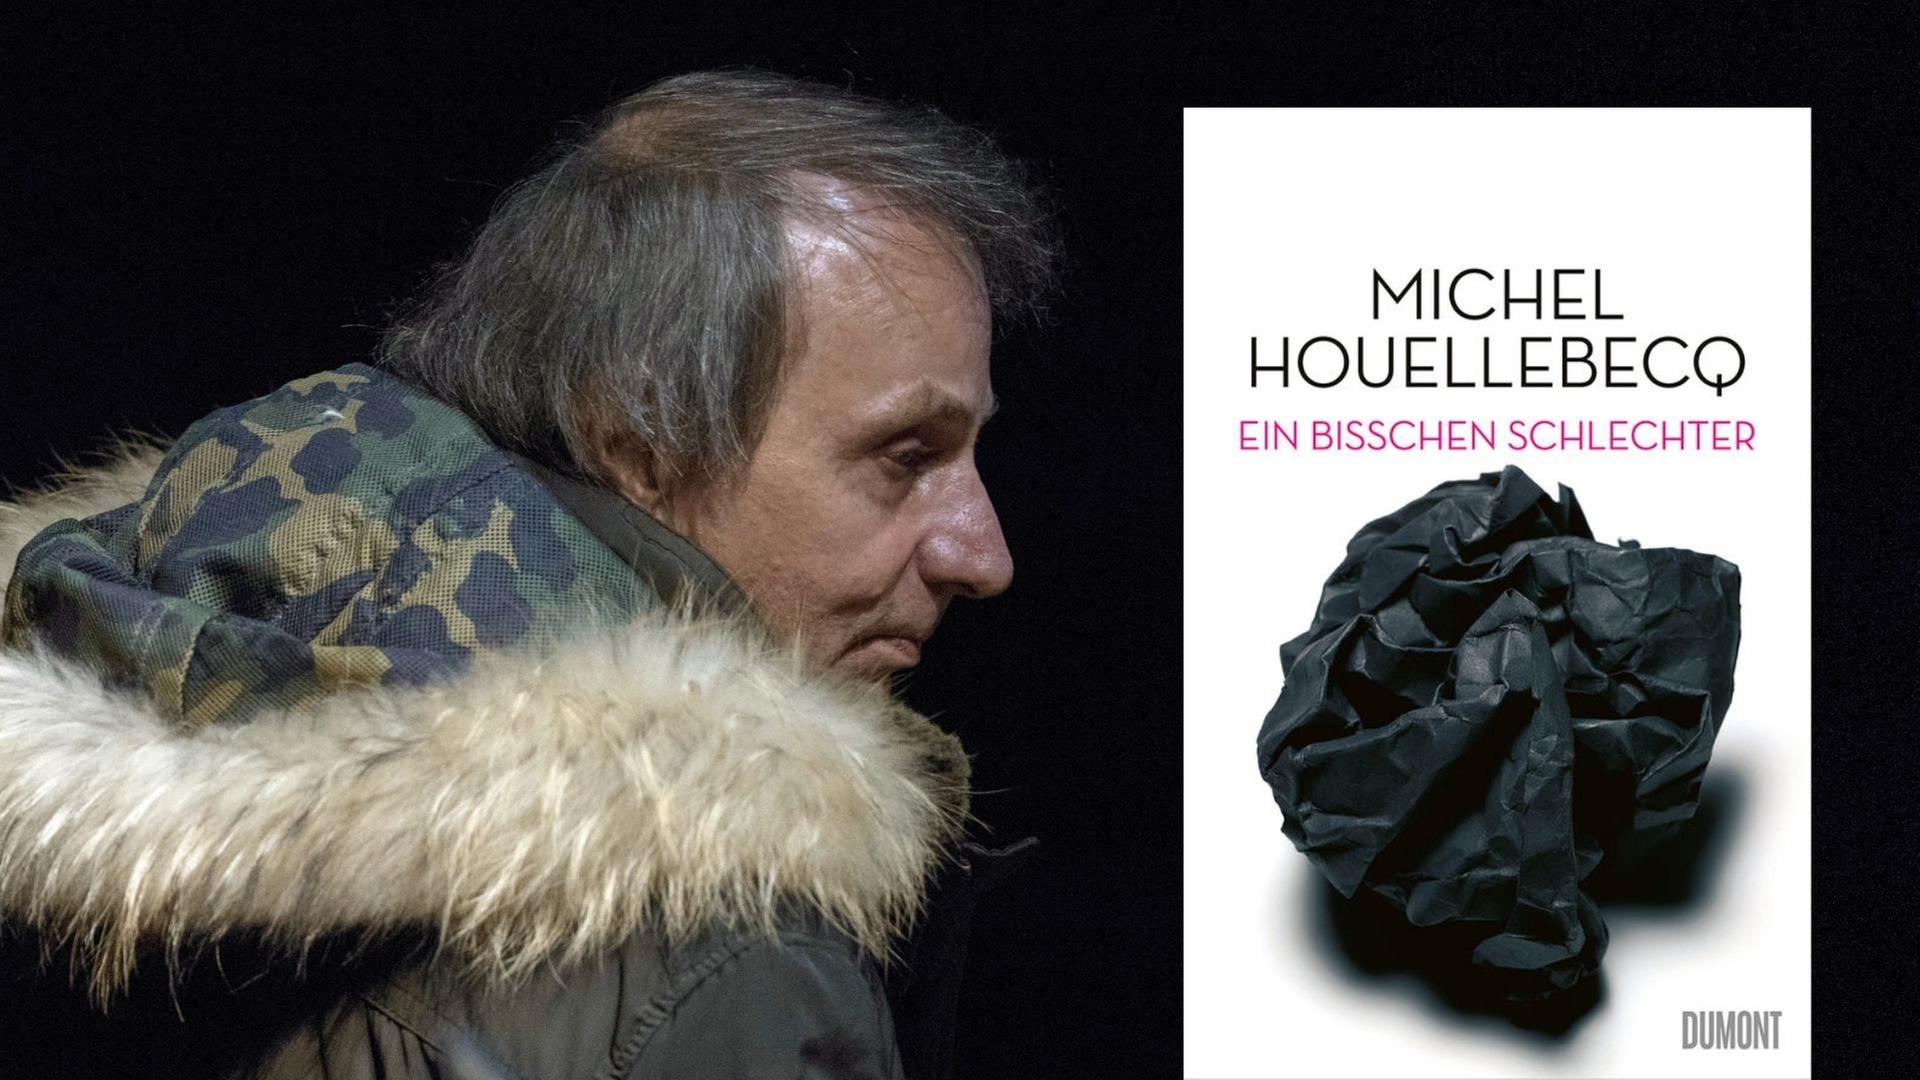 Der Schriftsteller Michel Houellebecq und sein Buch „Ein bisschen schlechter“